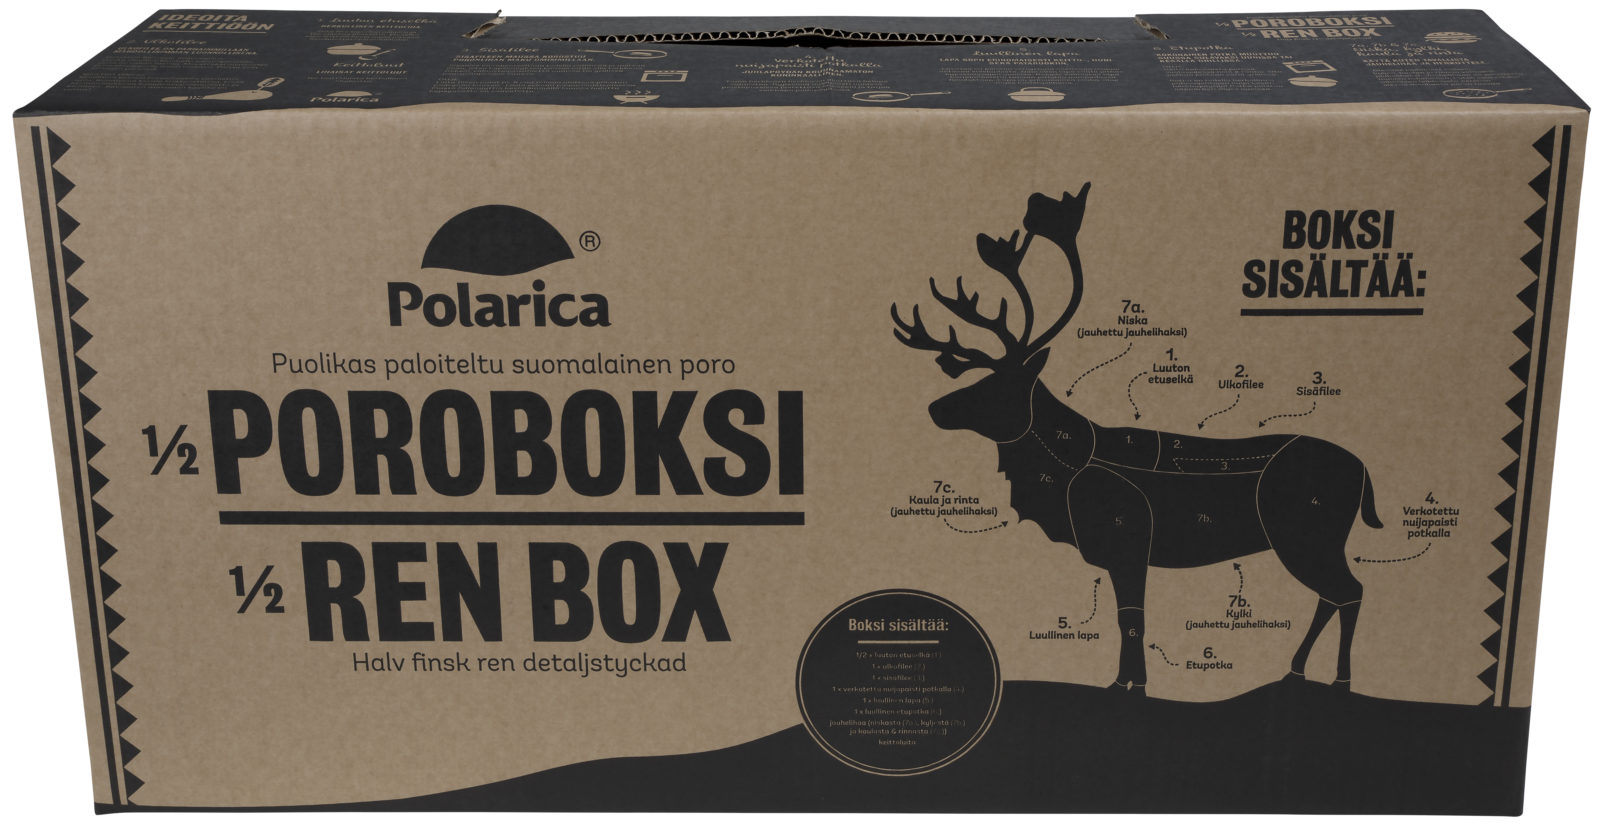 Polarica ½ Poroboksi - featured image